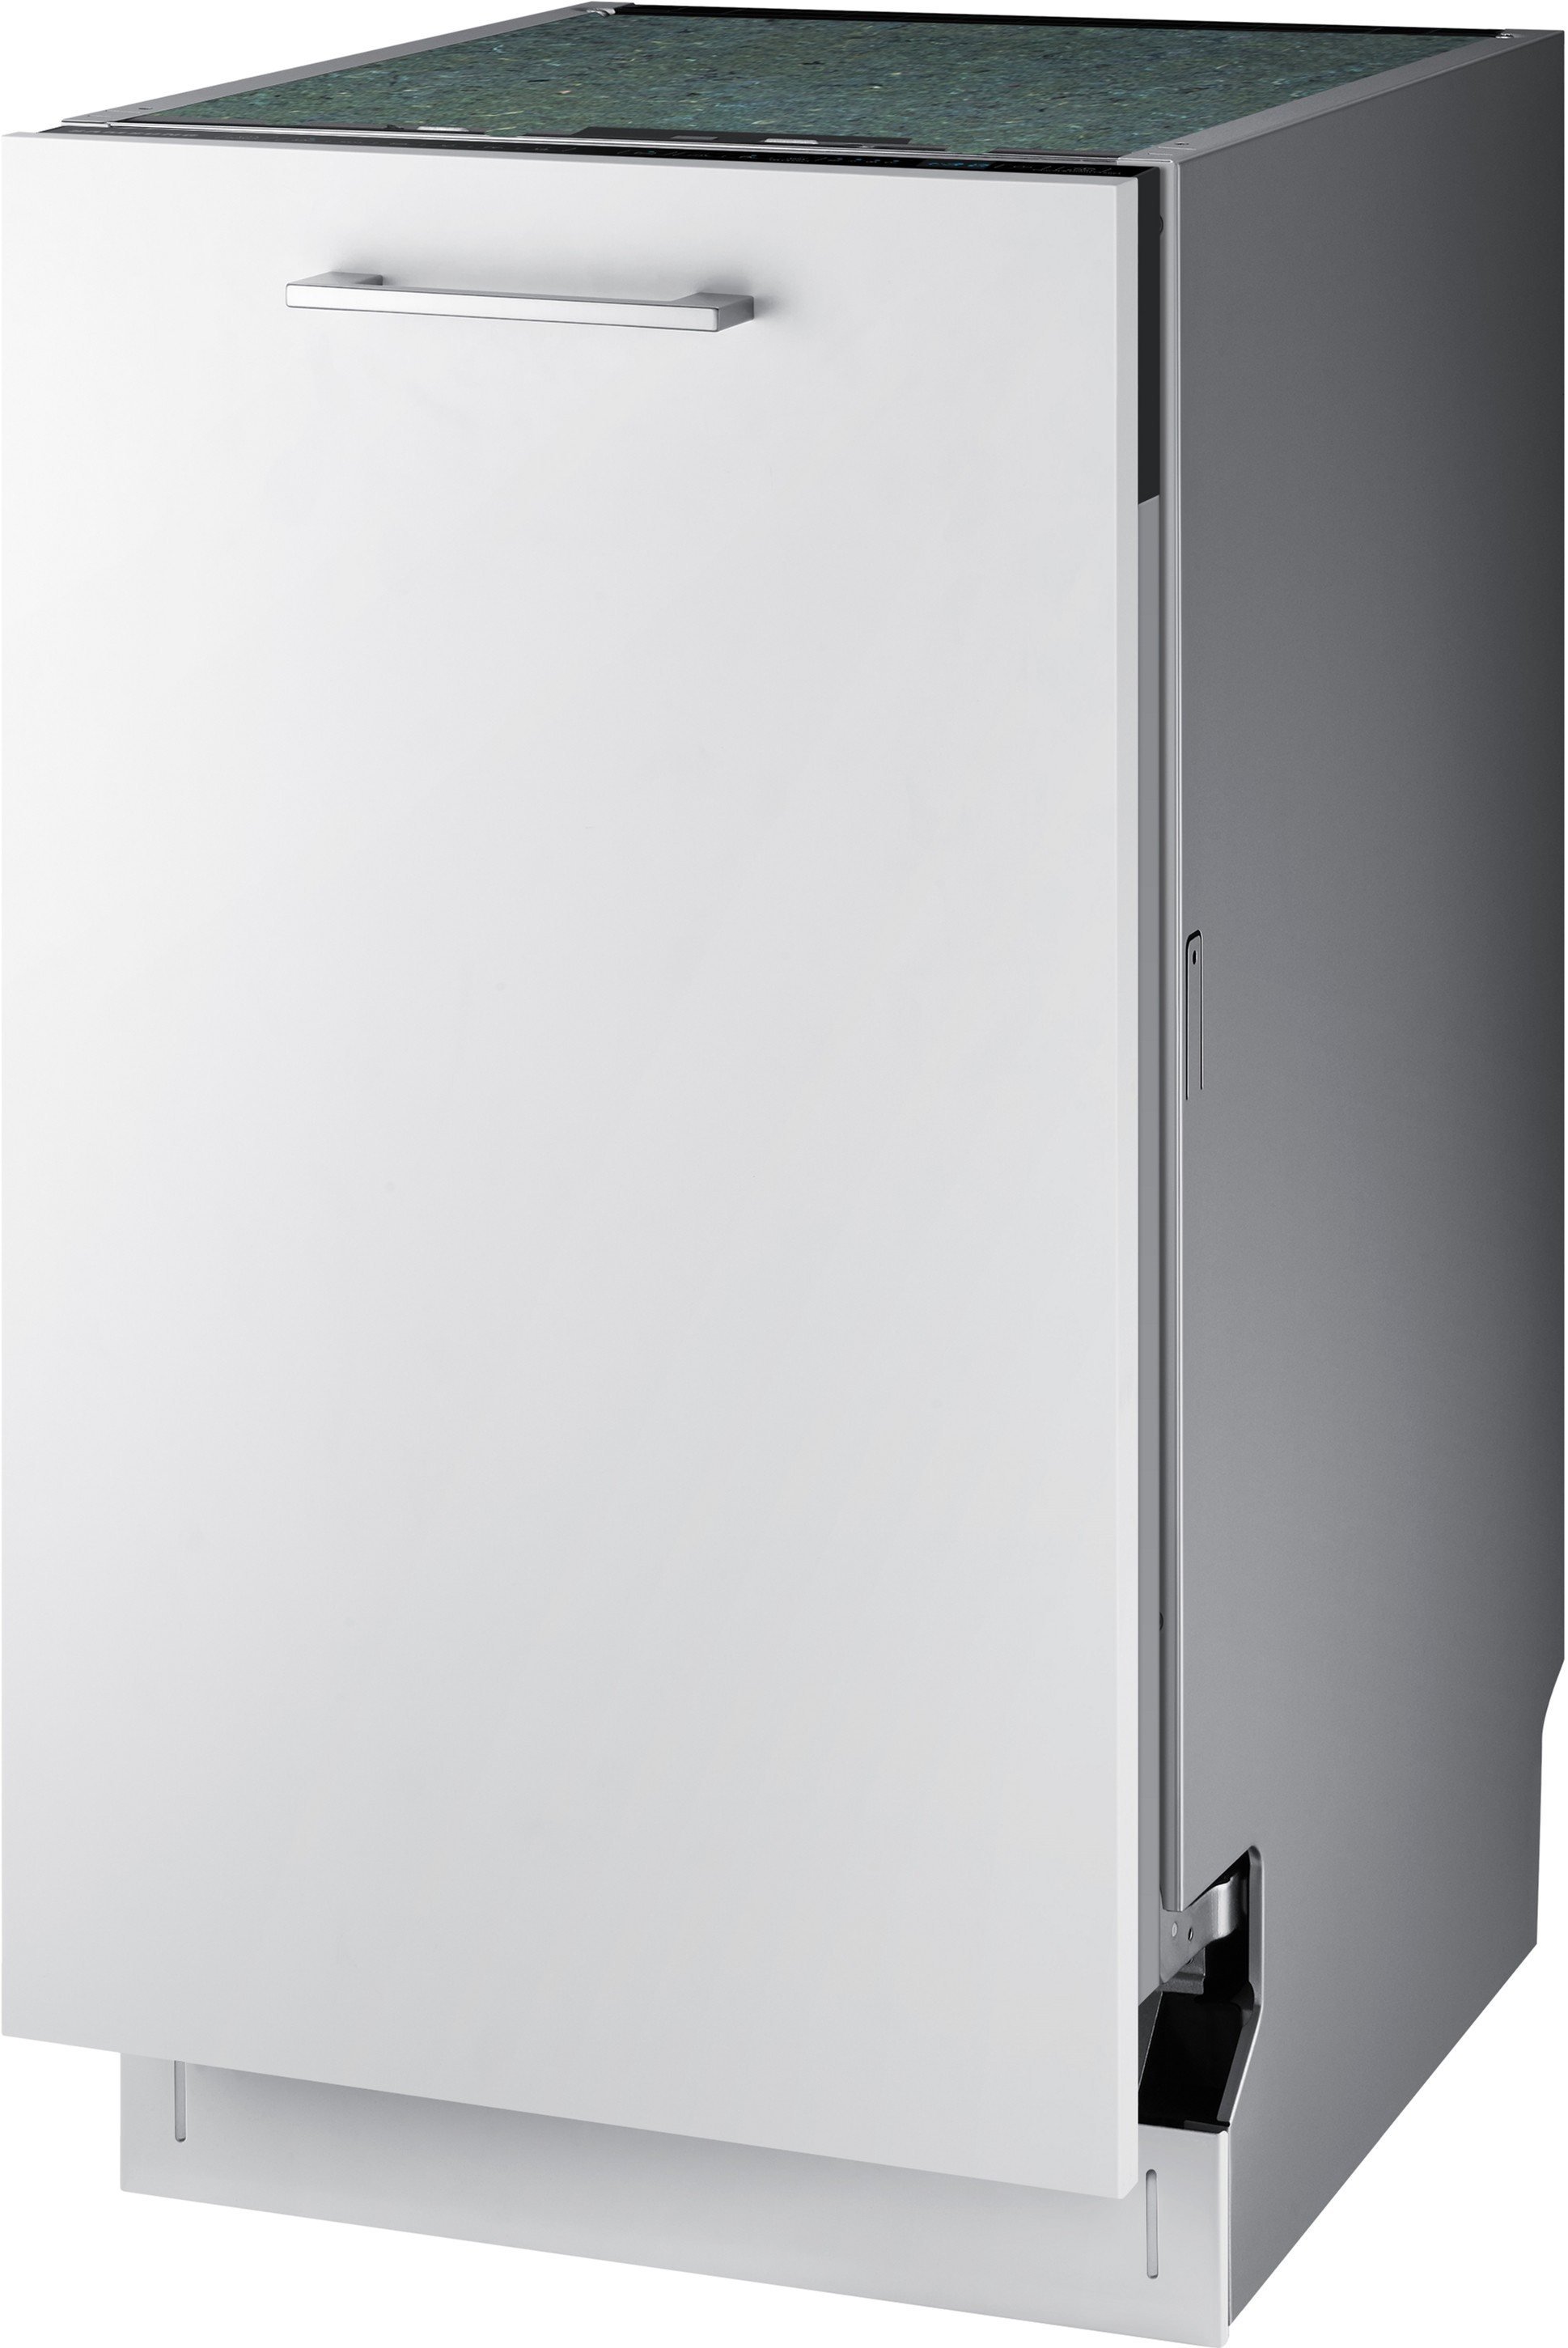 Посудомоечная машина Samsung DW50R4040BB/WT отзывы - изображения 5